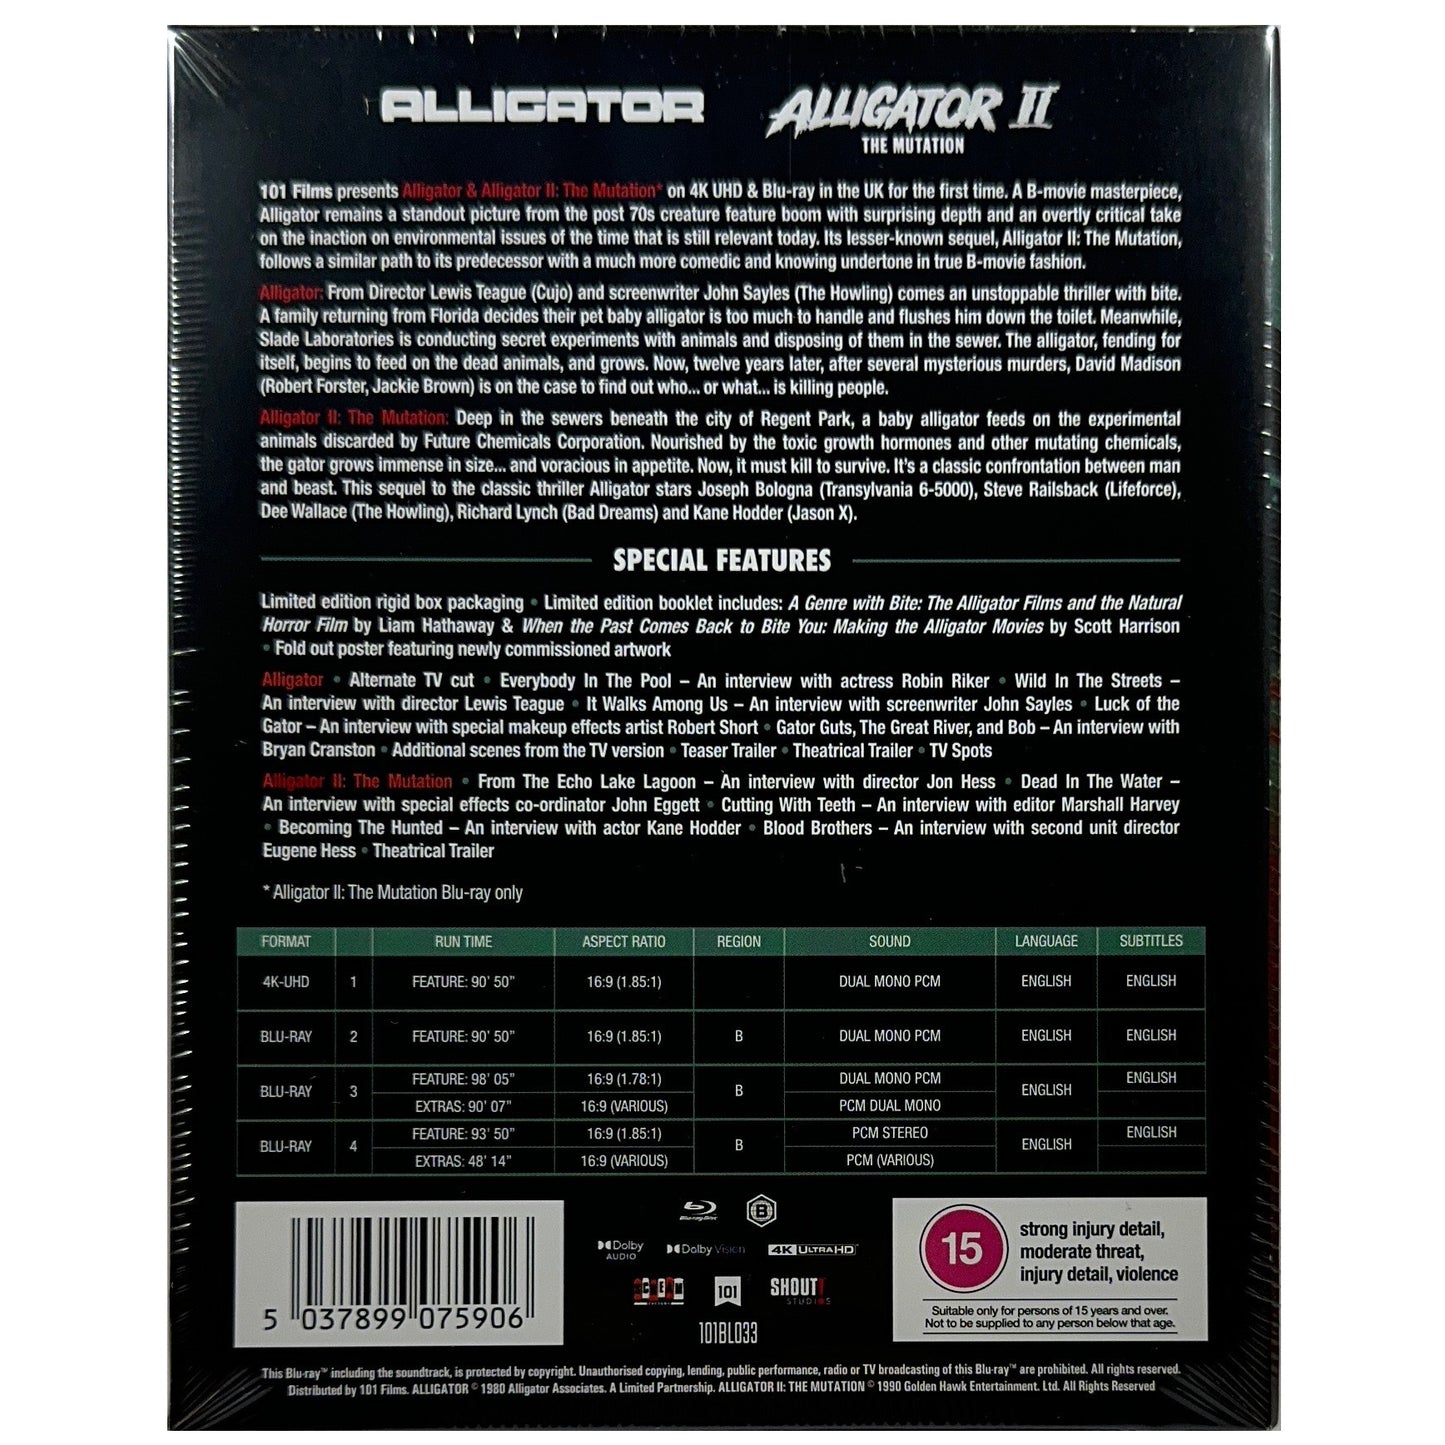 Alligator & Alligator II: The Mutation 4K Ultra HD + Blu-Ray - Limited Edition